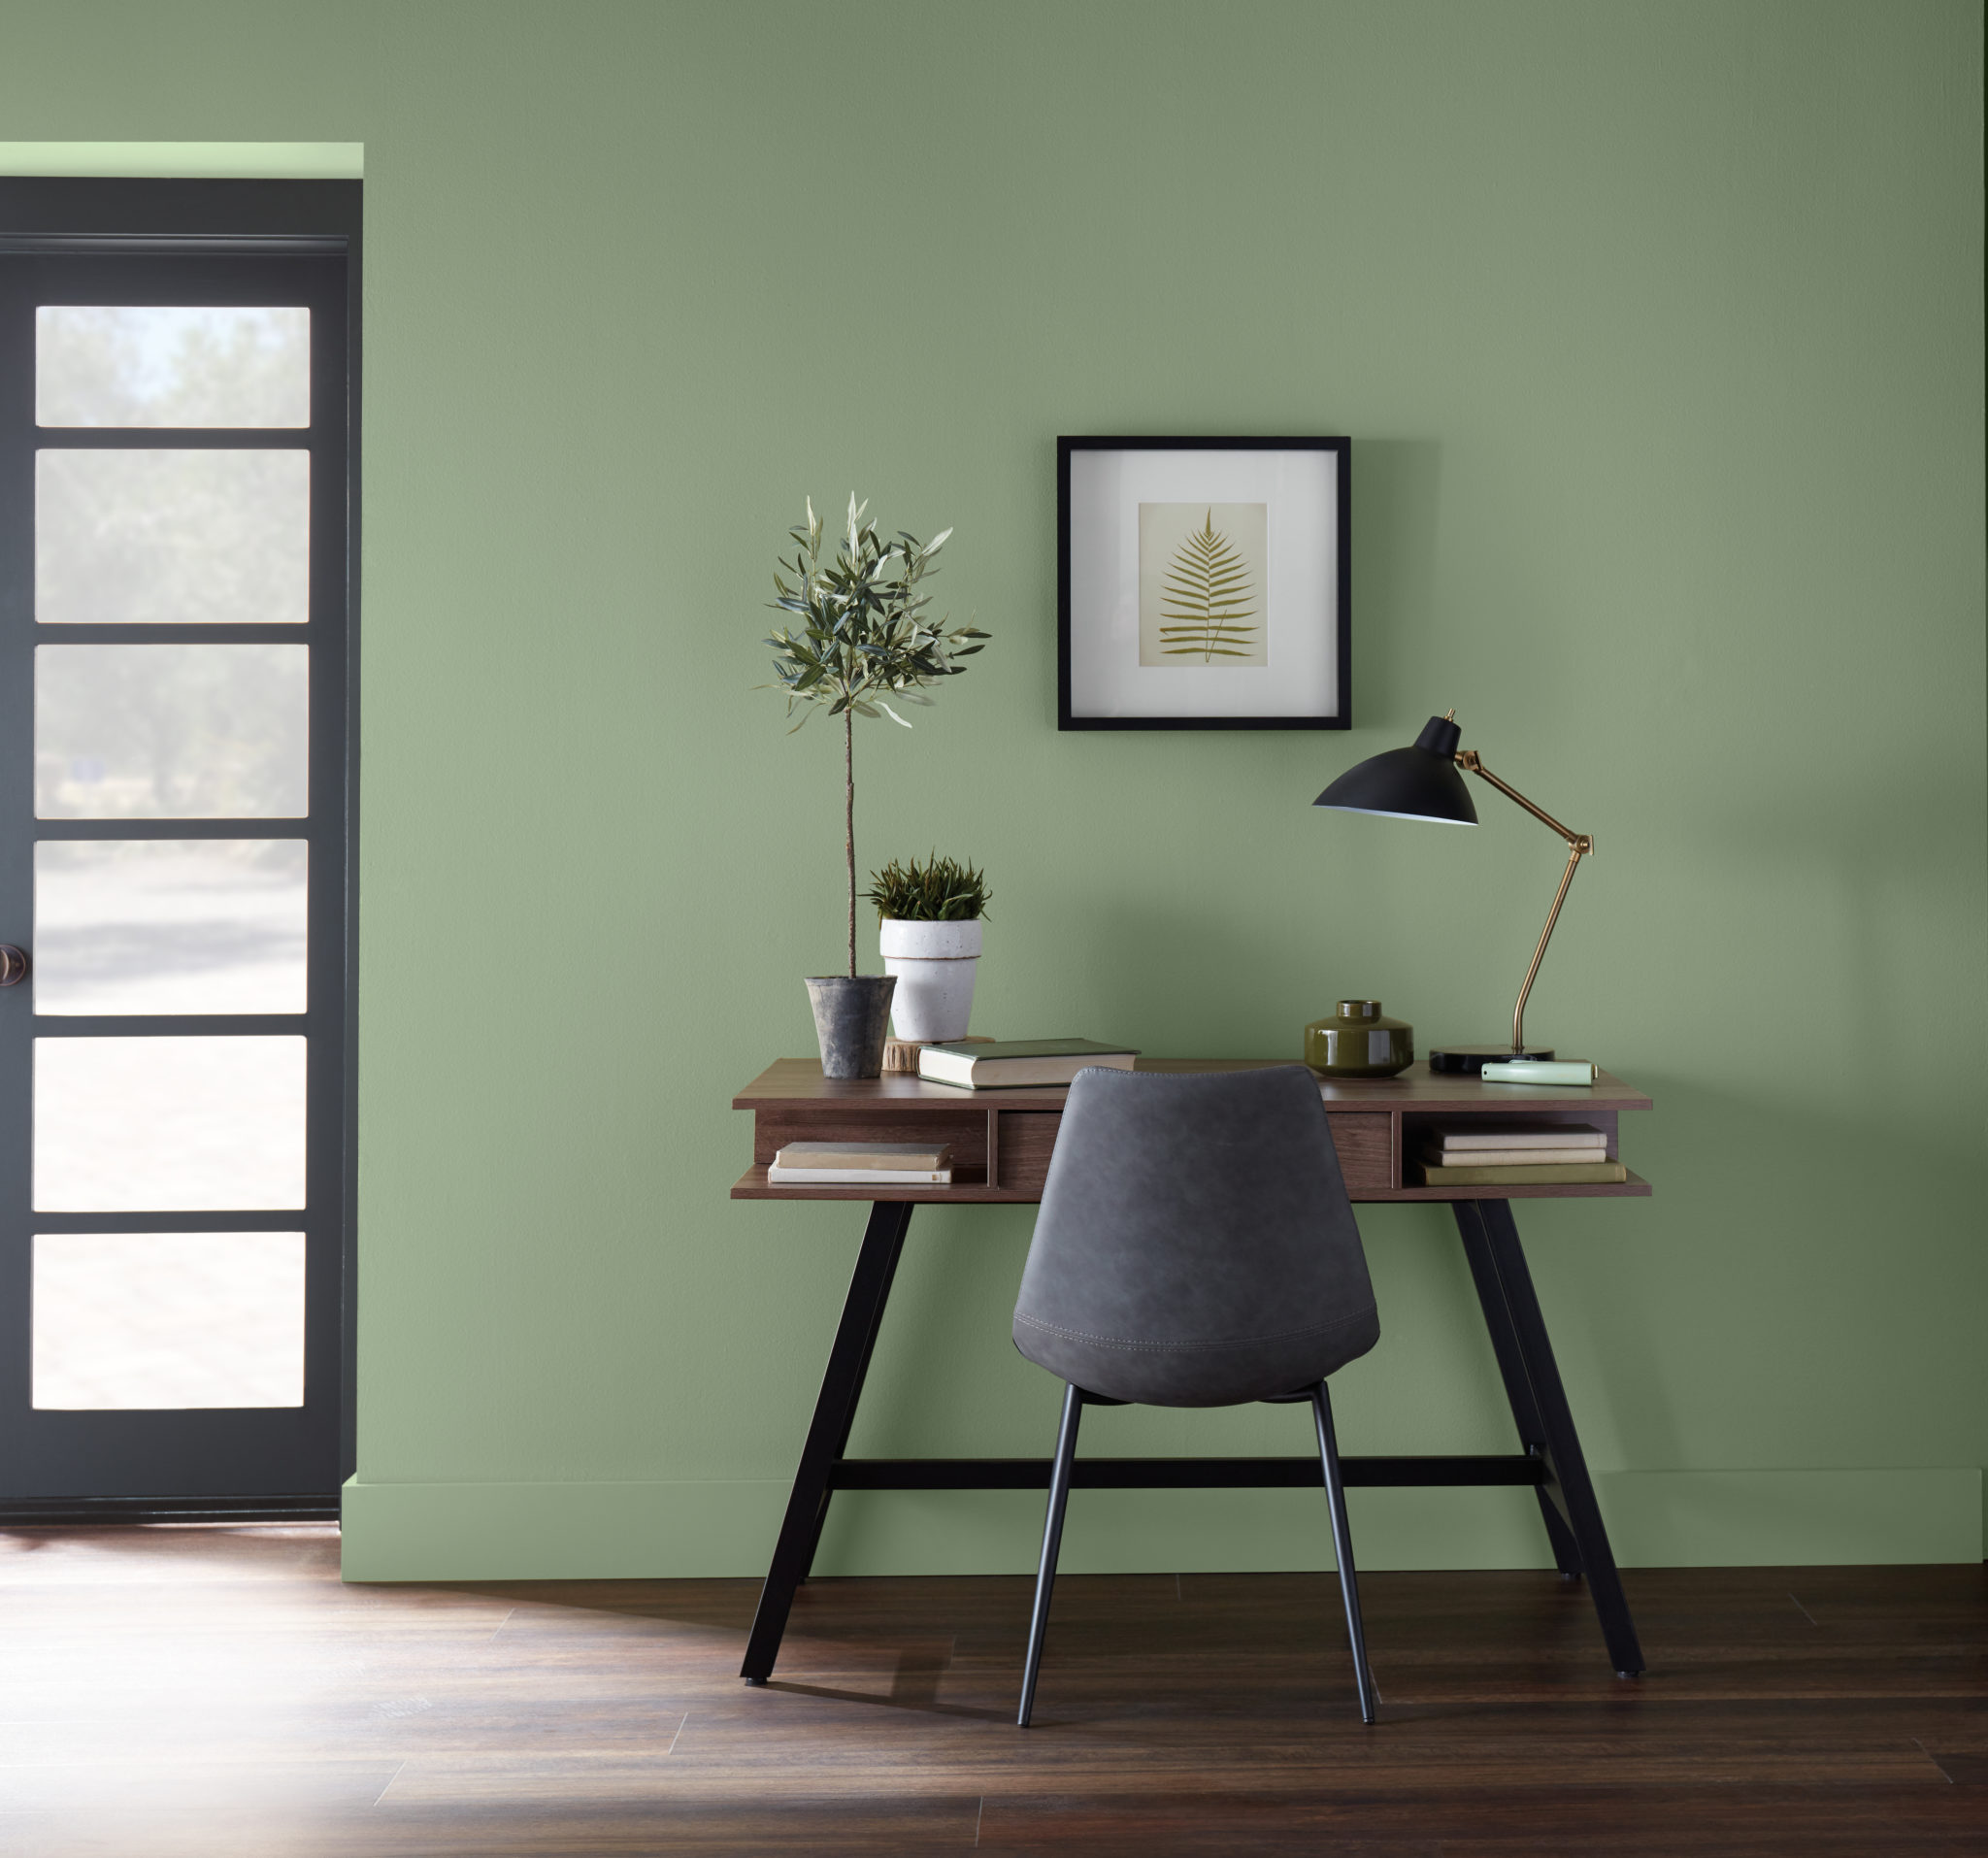 Un coin bureau décontracté dans un salon avec un pupitre  moderne et une chaise confortable. Pour compléter le look, on retrouve quelques éléments décoratifs de bureau. La couleur du mur est un vert moyen appelé Arbre de lauriers.